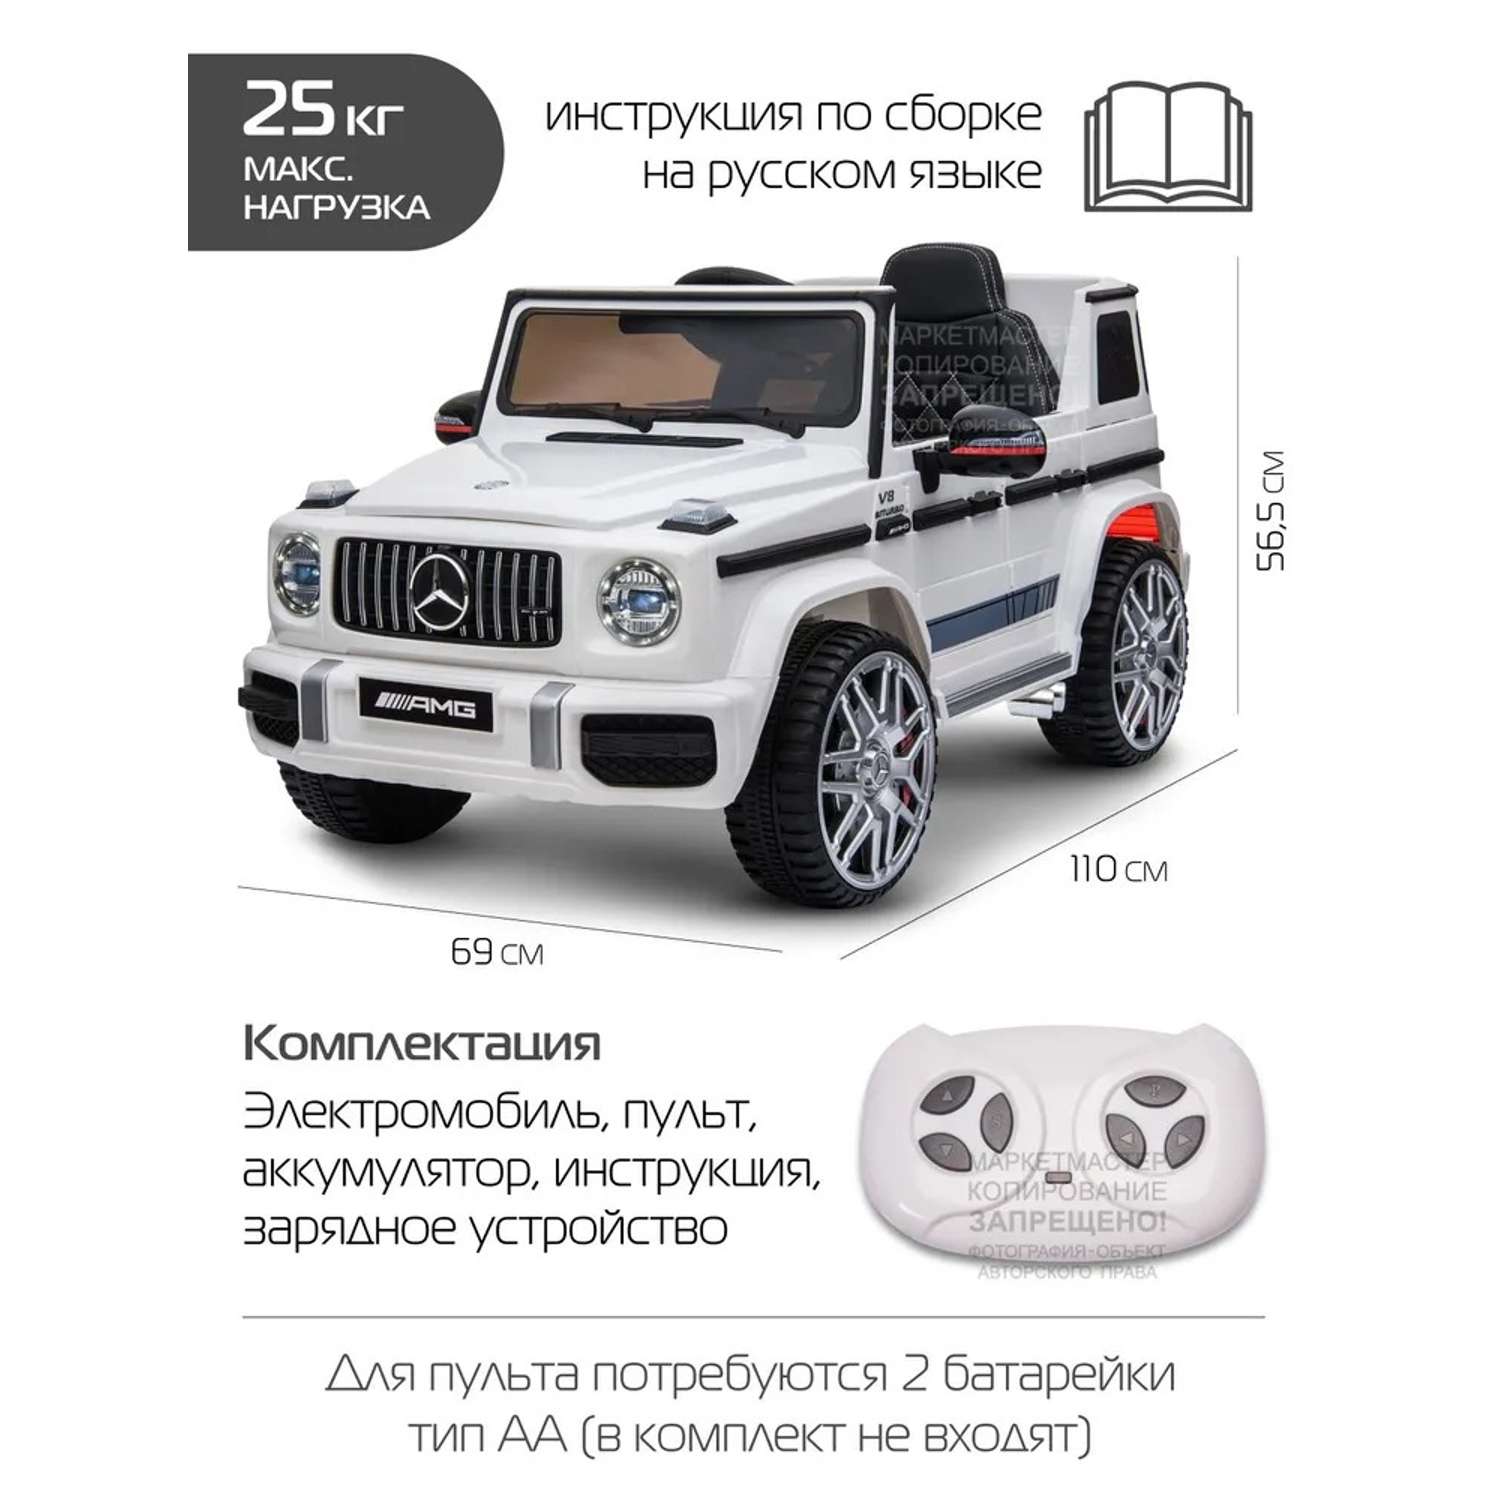 Электромобиль детский CITYRIDE Радиоуправляемый Mercedes Benz AMG на аккумуляторе 12V/4.5AH*1 380*2 2.4GHz свет звук - фото 4